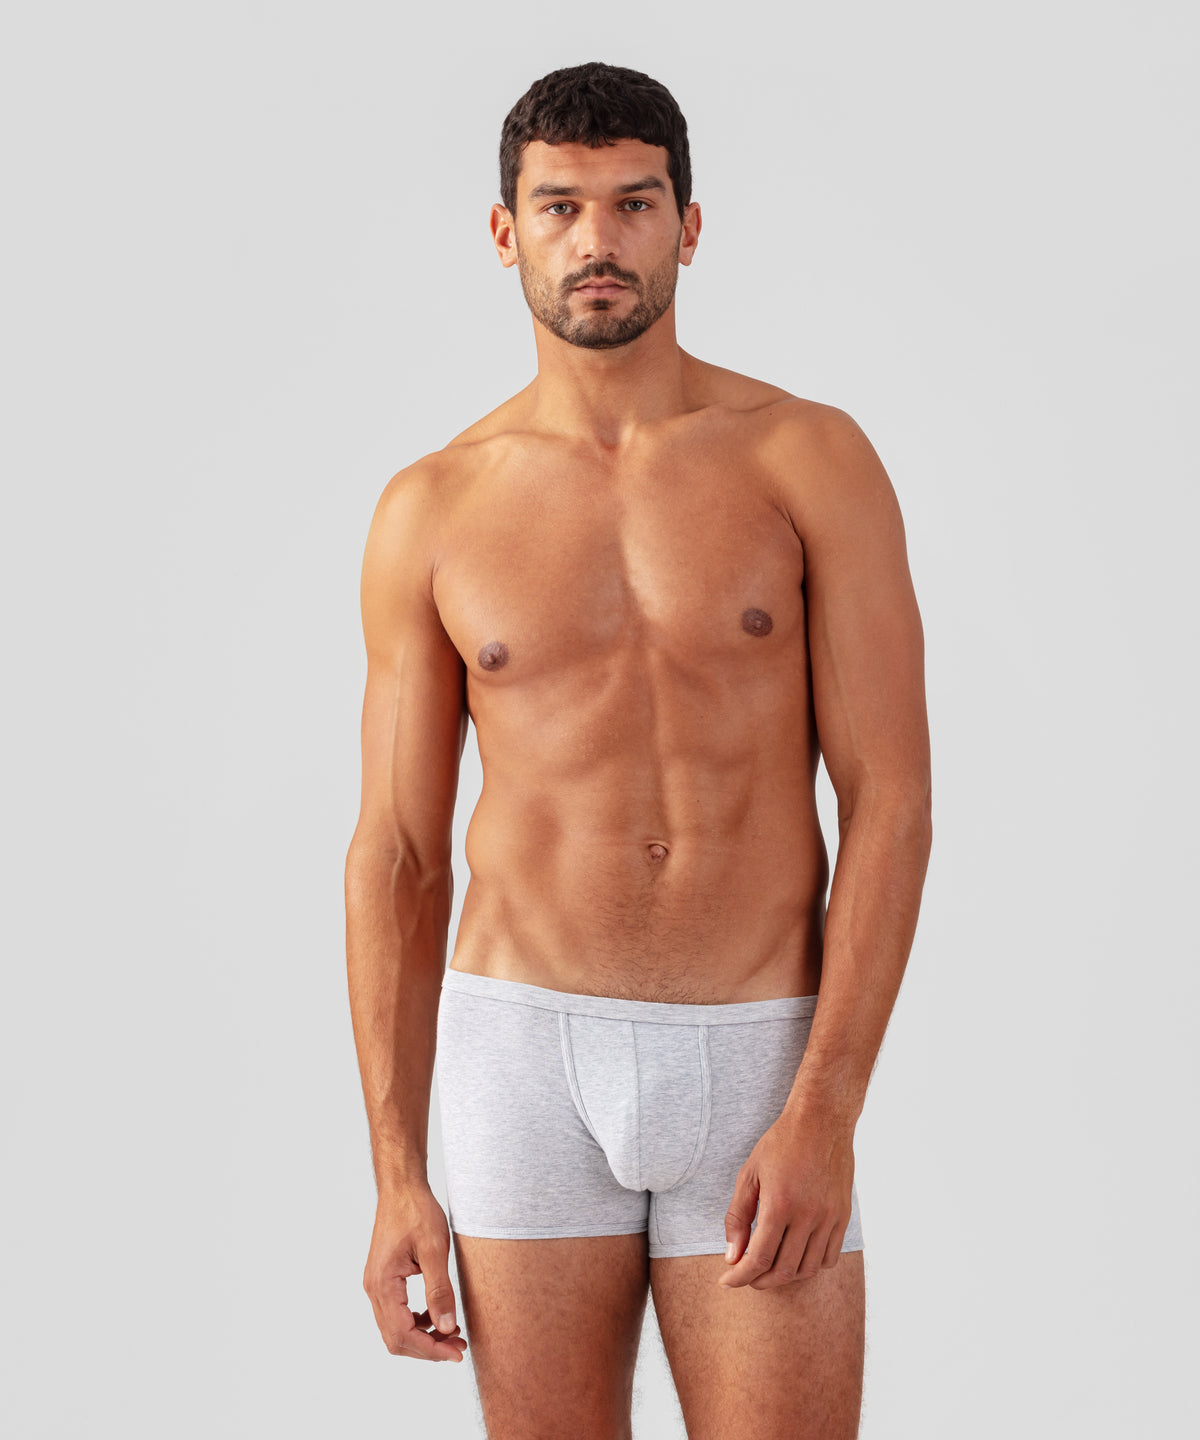 Ces marques underwear qui réinventent le sous-vêtement masculin